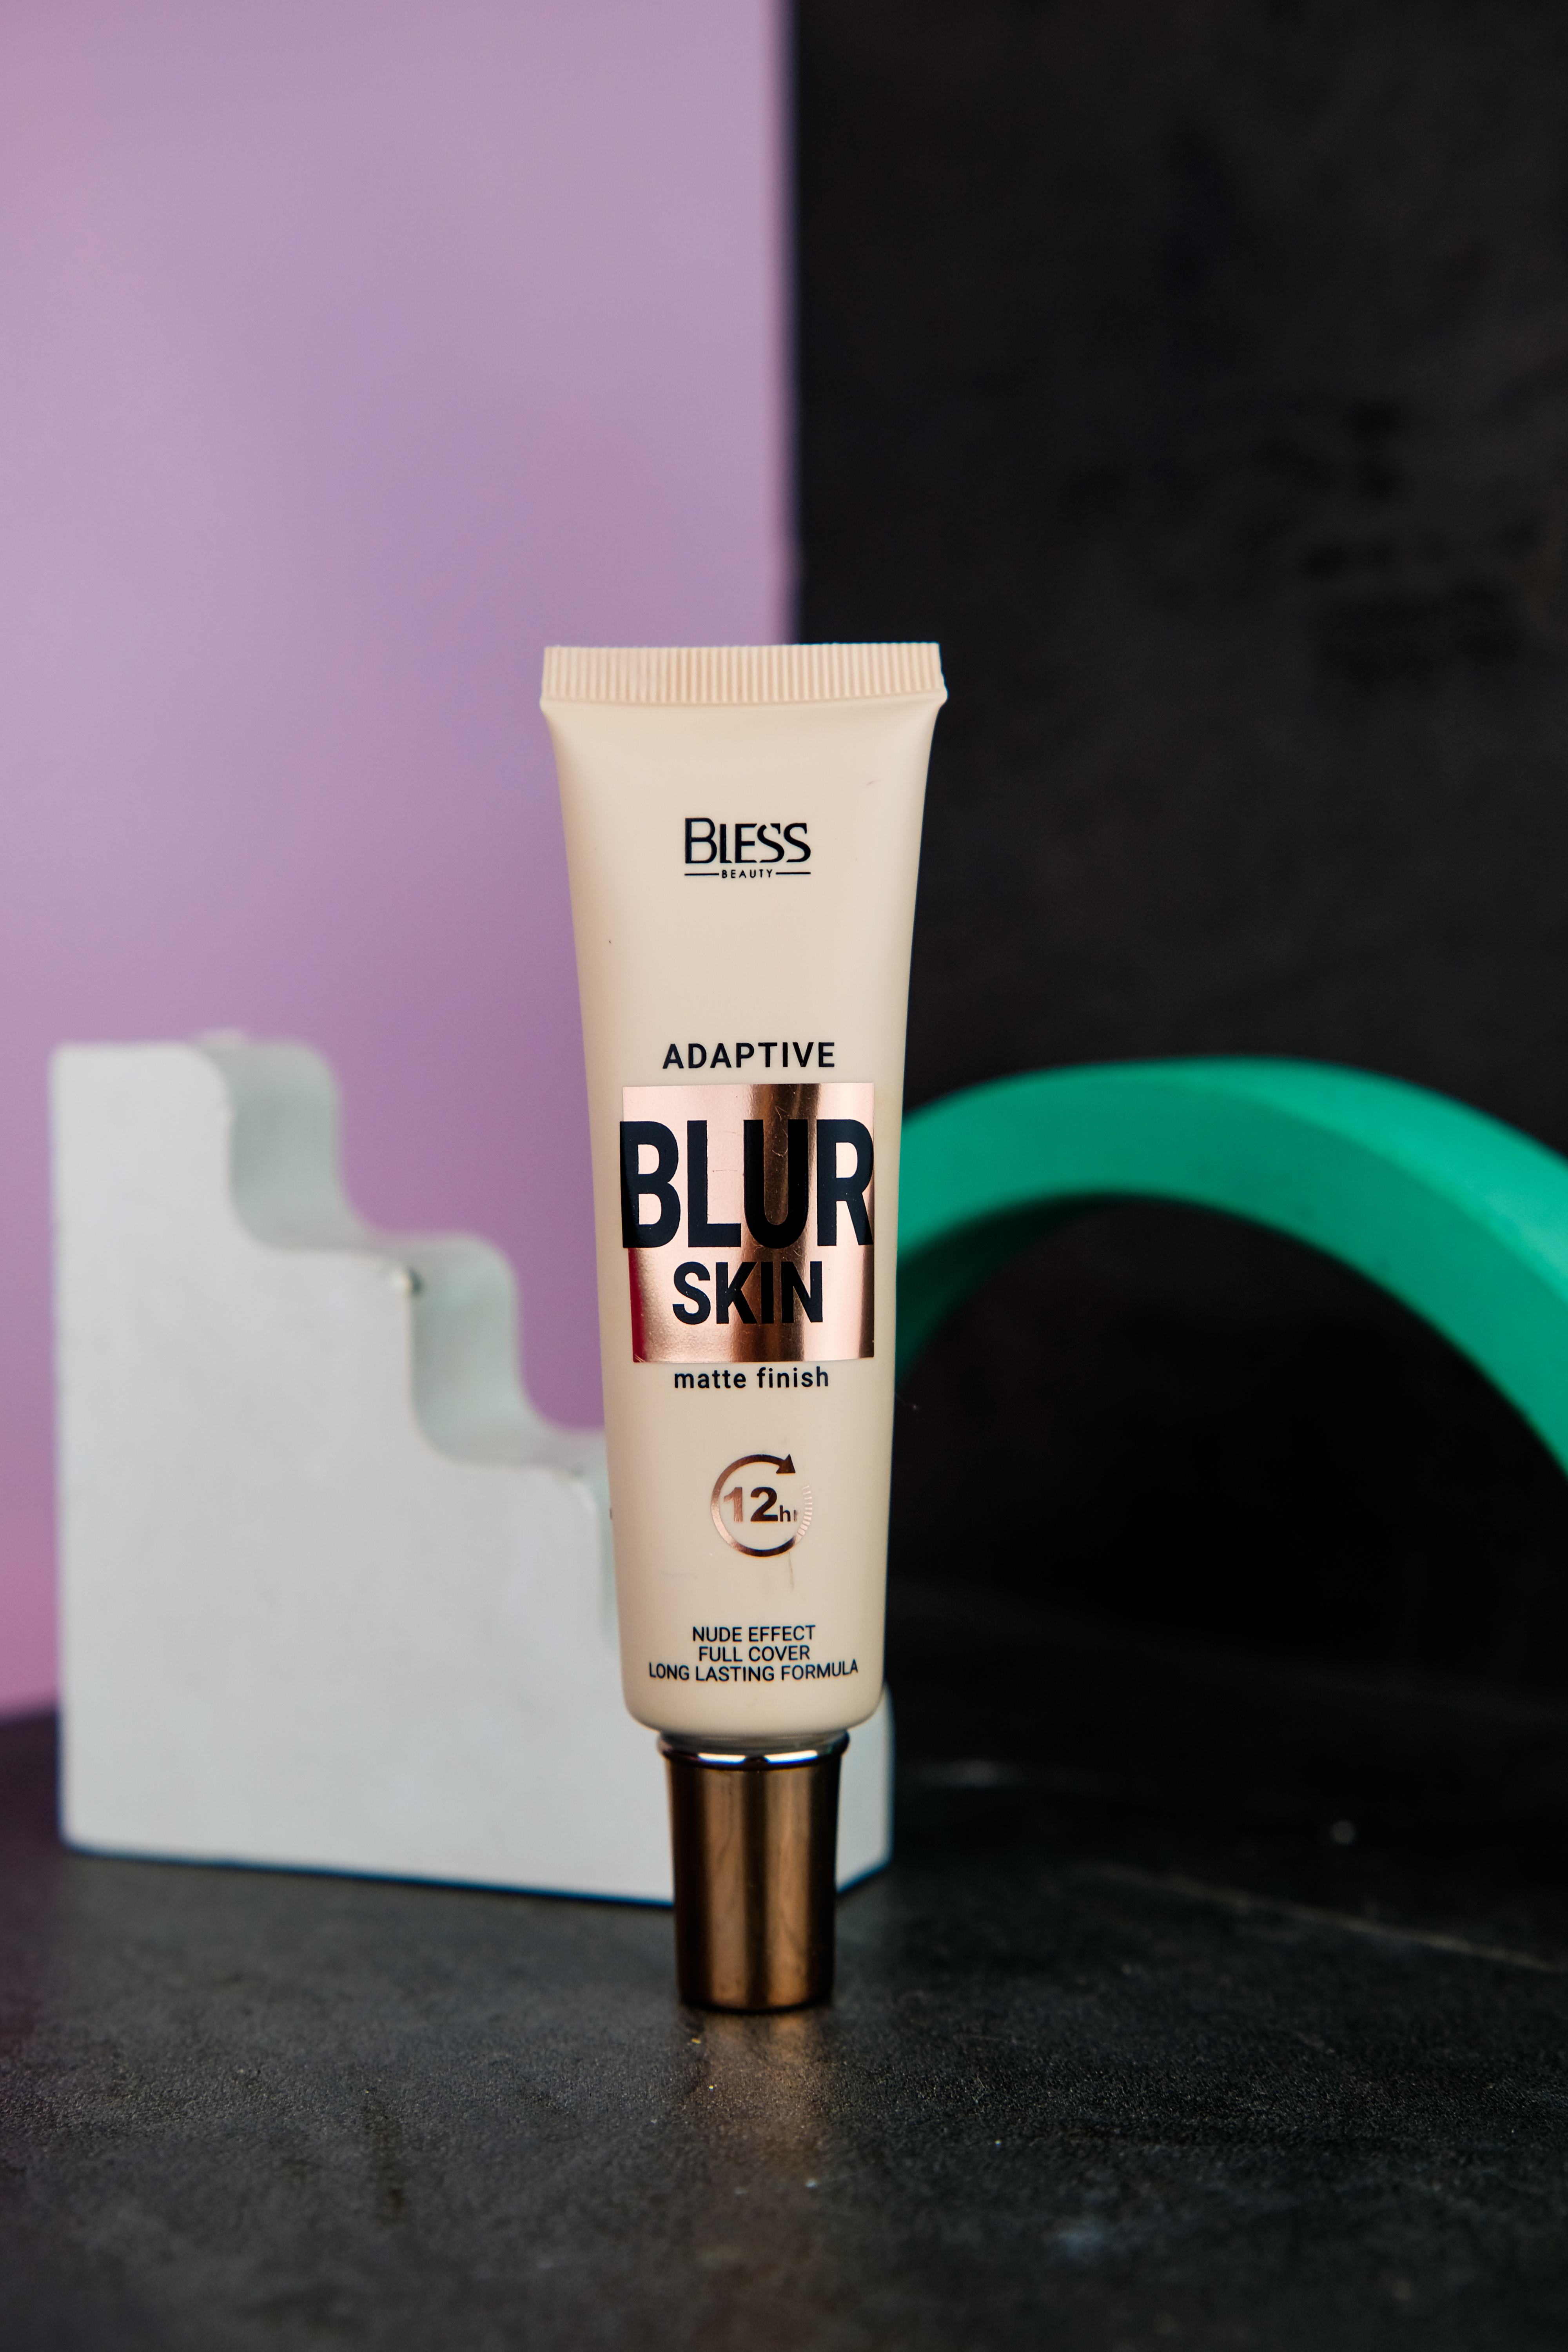 Bless Beauty Blur Skin : Засіб який гарно виглядає на фото для конкурсів